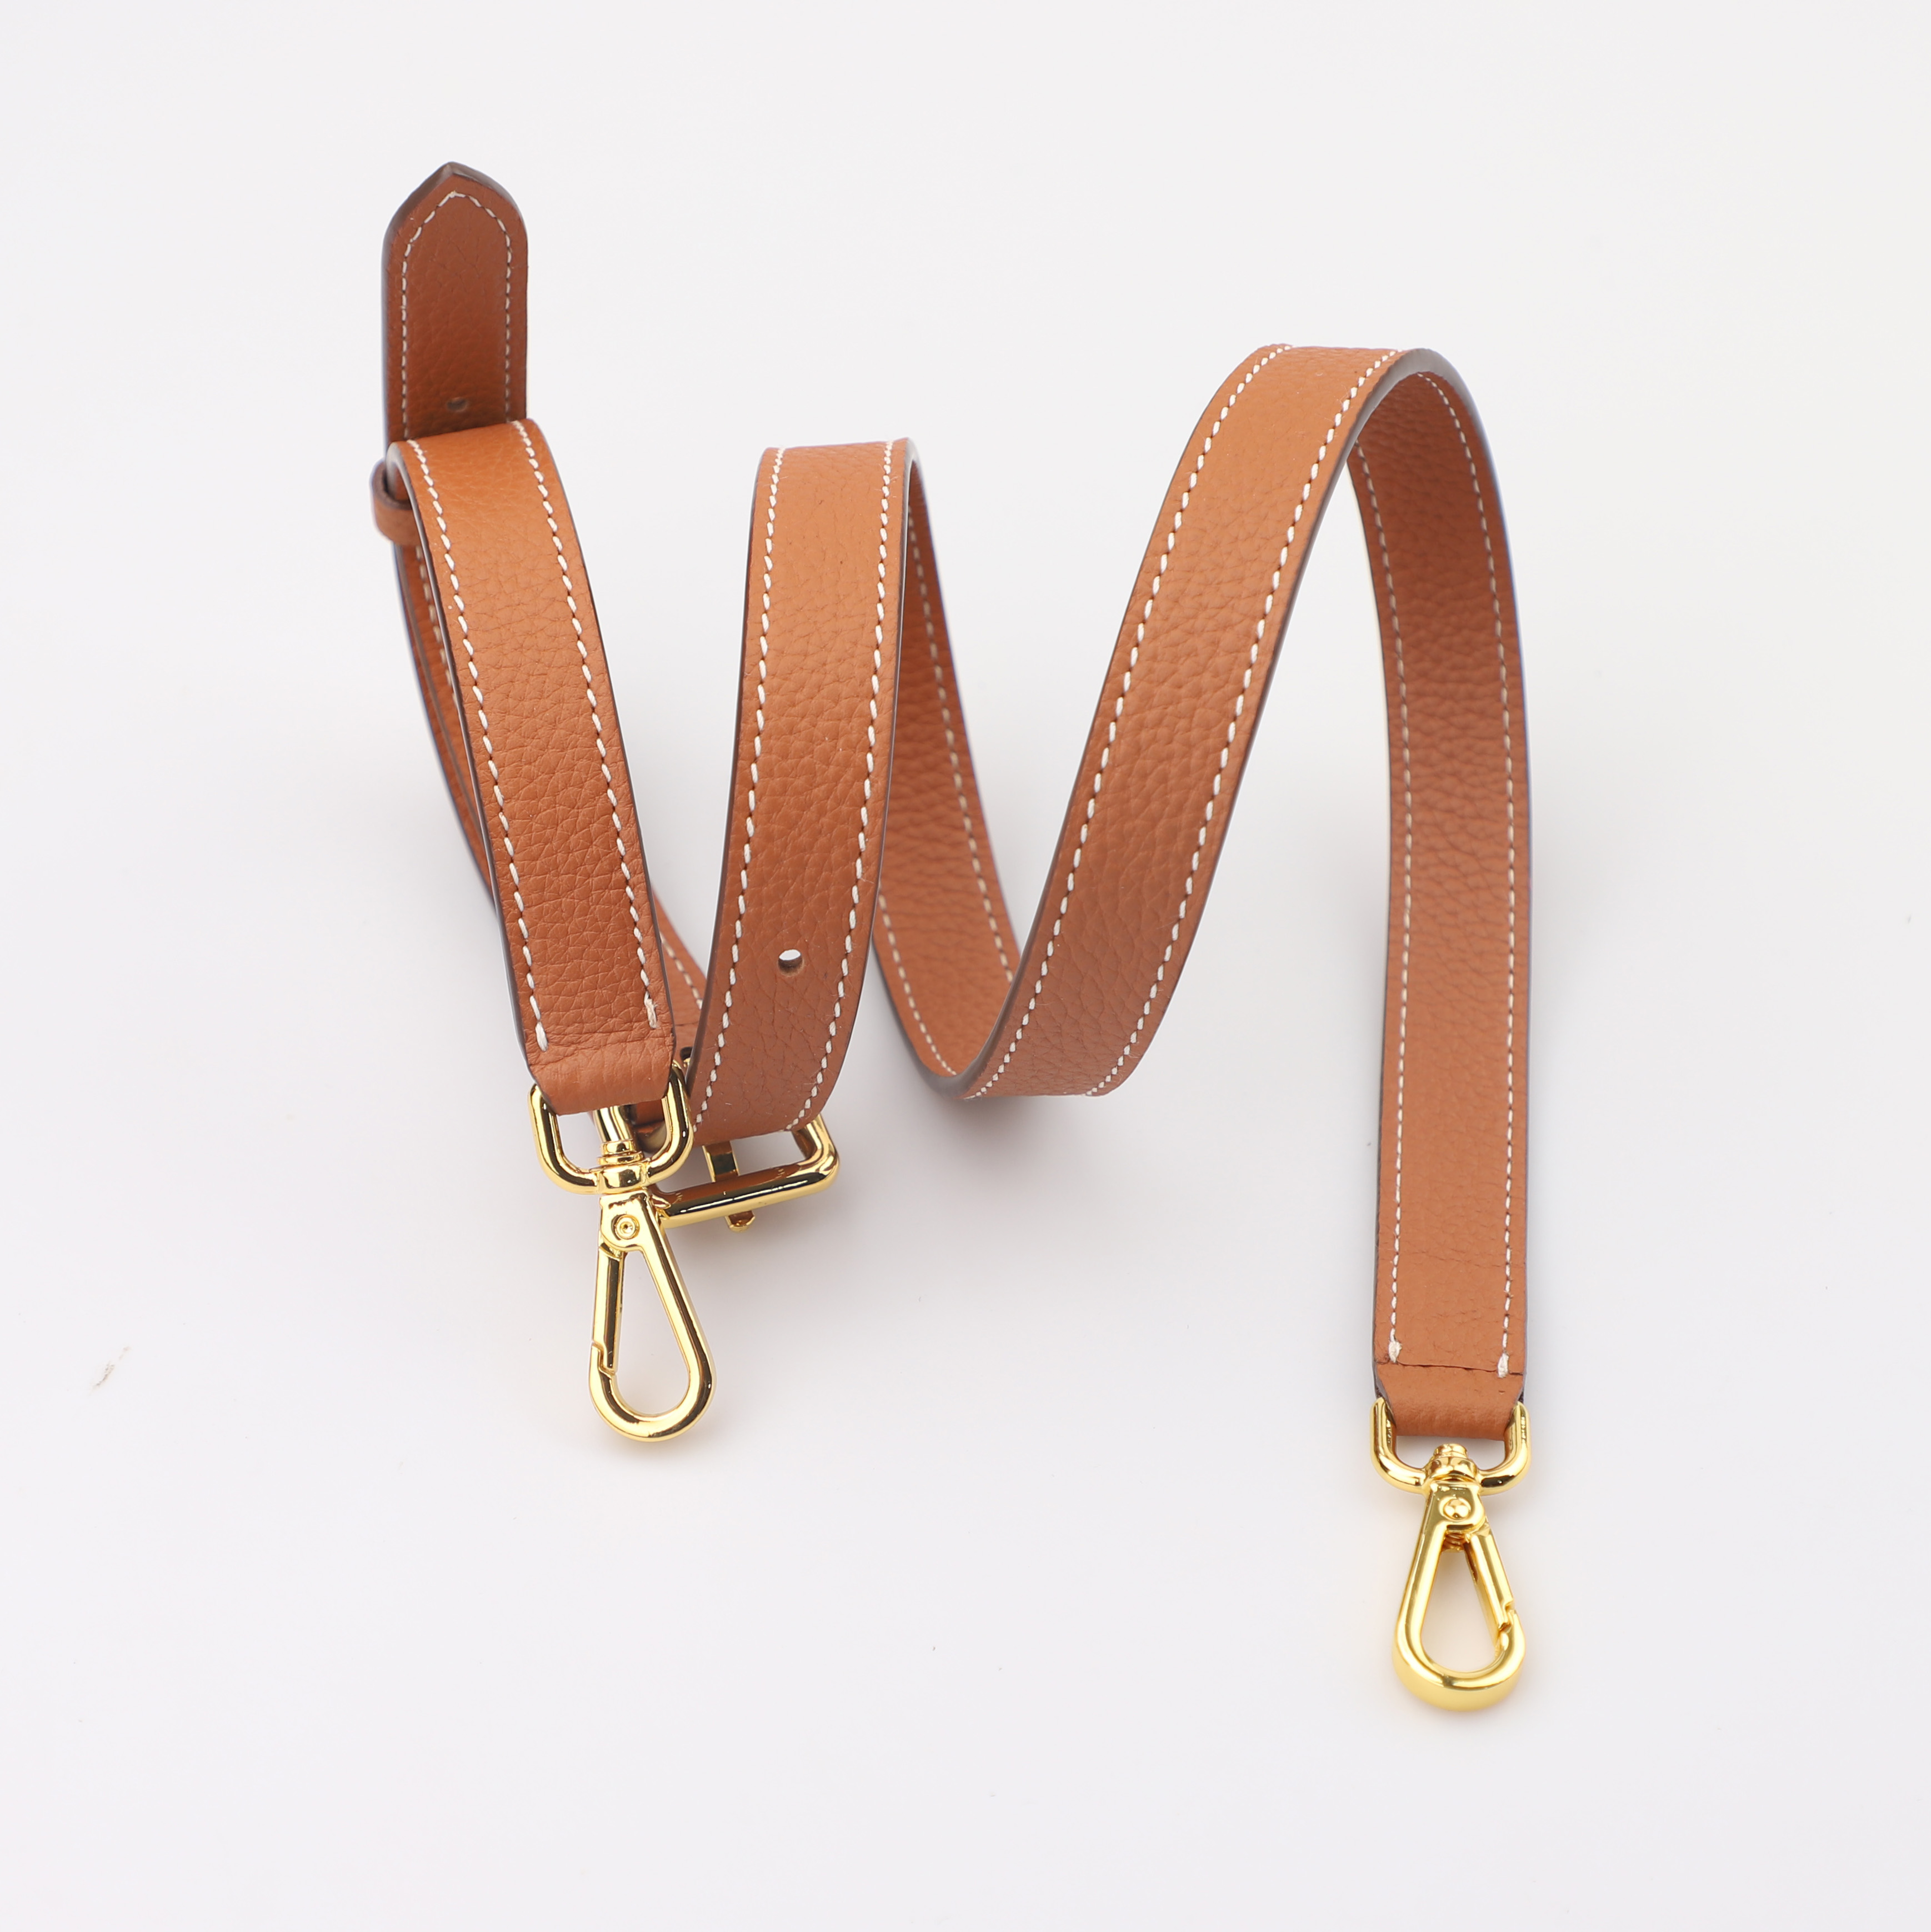 Stitched Adjustable Leather Shoulder Strap - Add Libb Designs